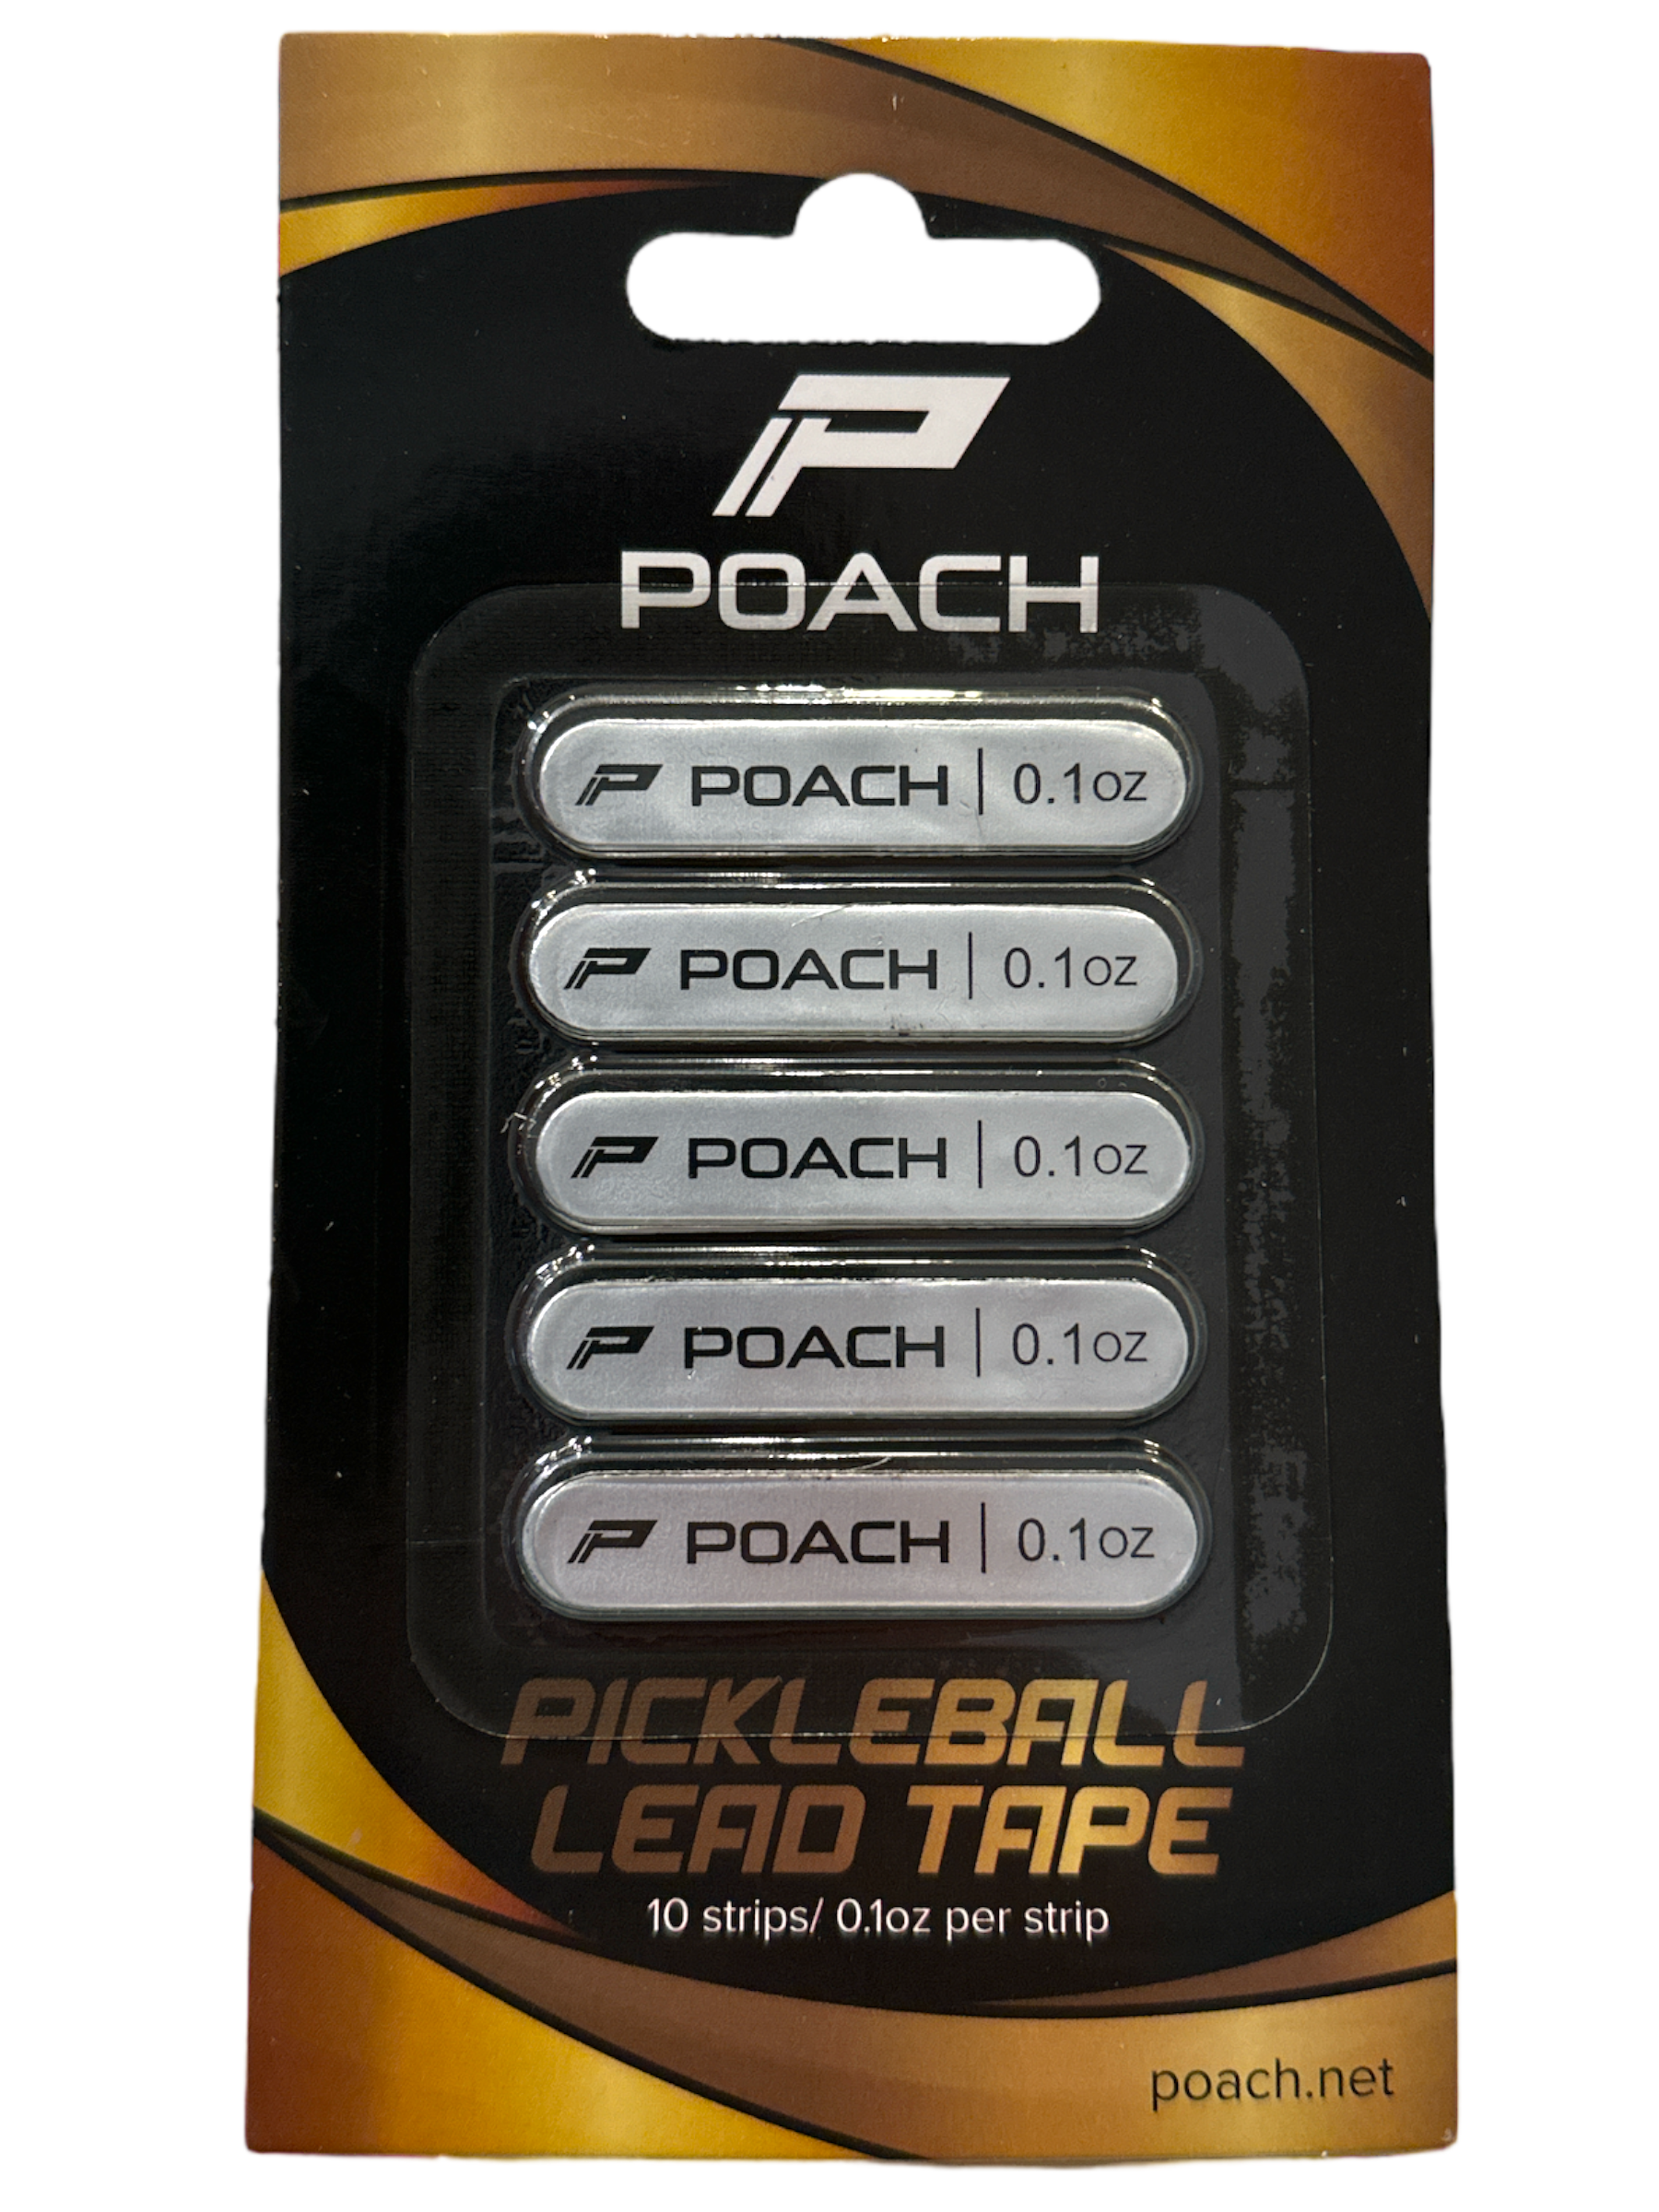 Lead Tape (10 Strips)